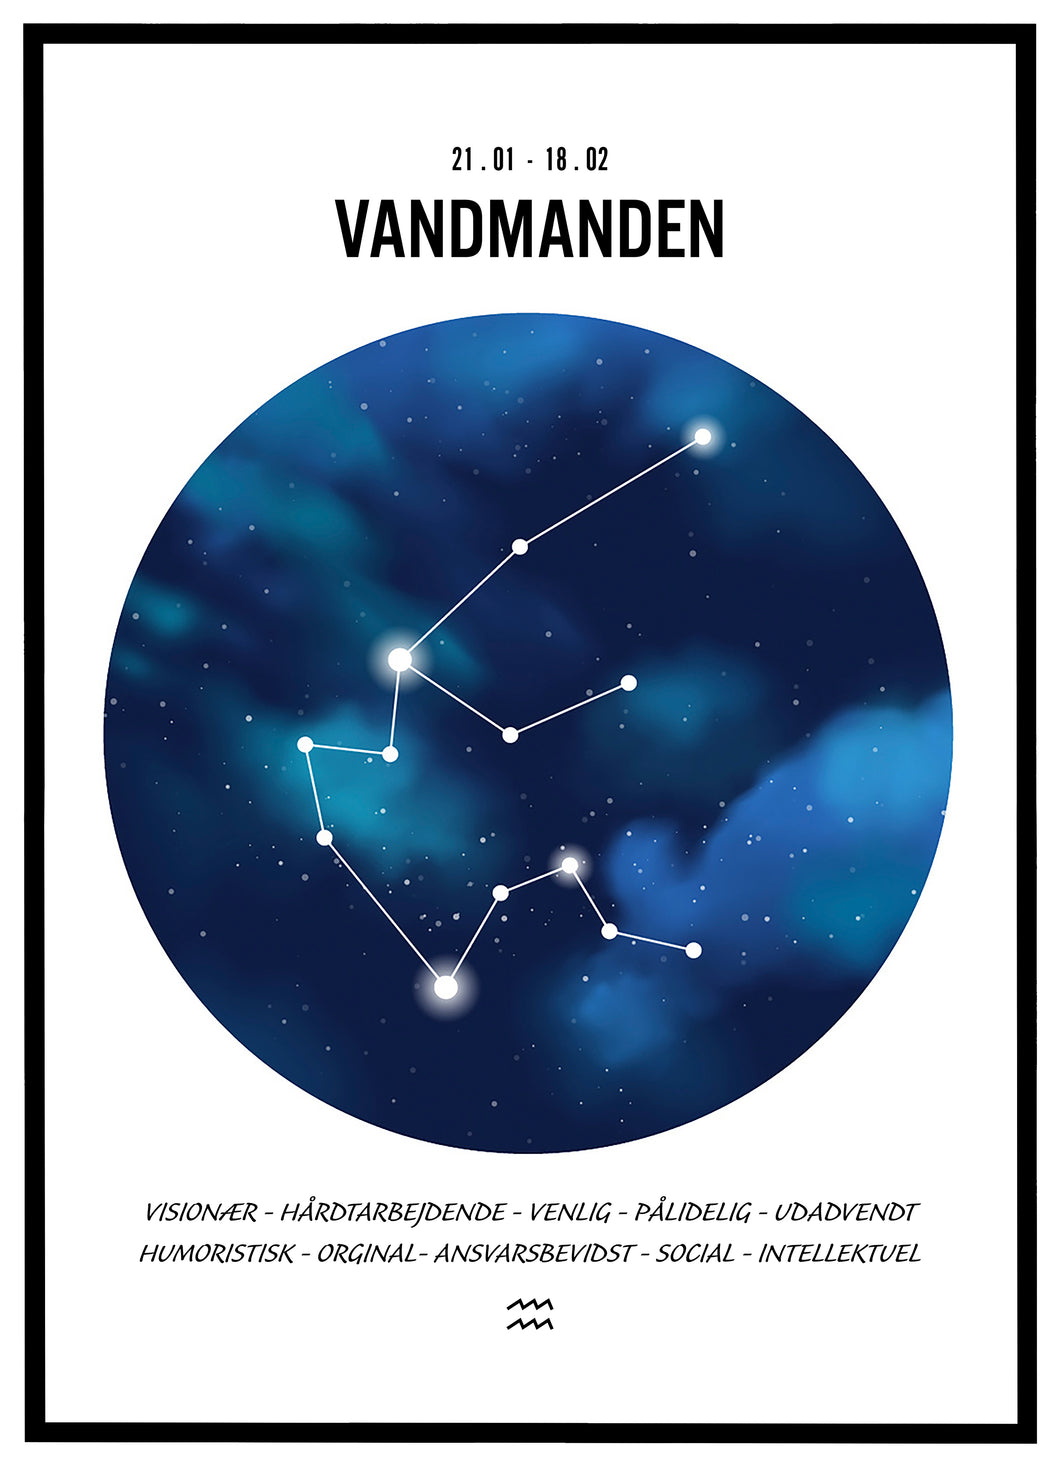 Stjernehimmel plakat - Vandmanden